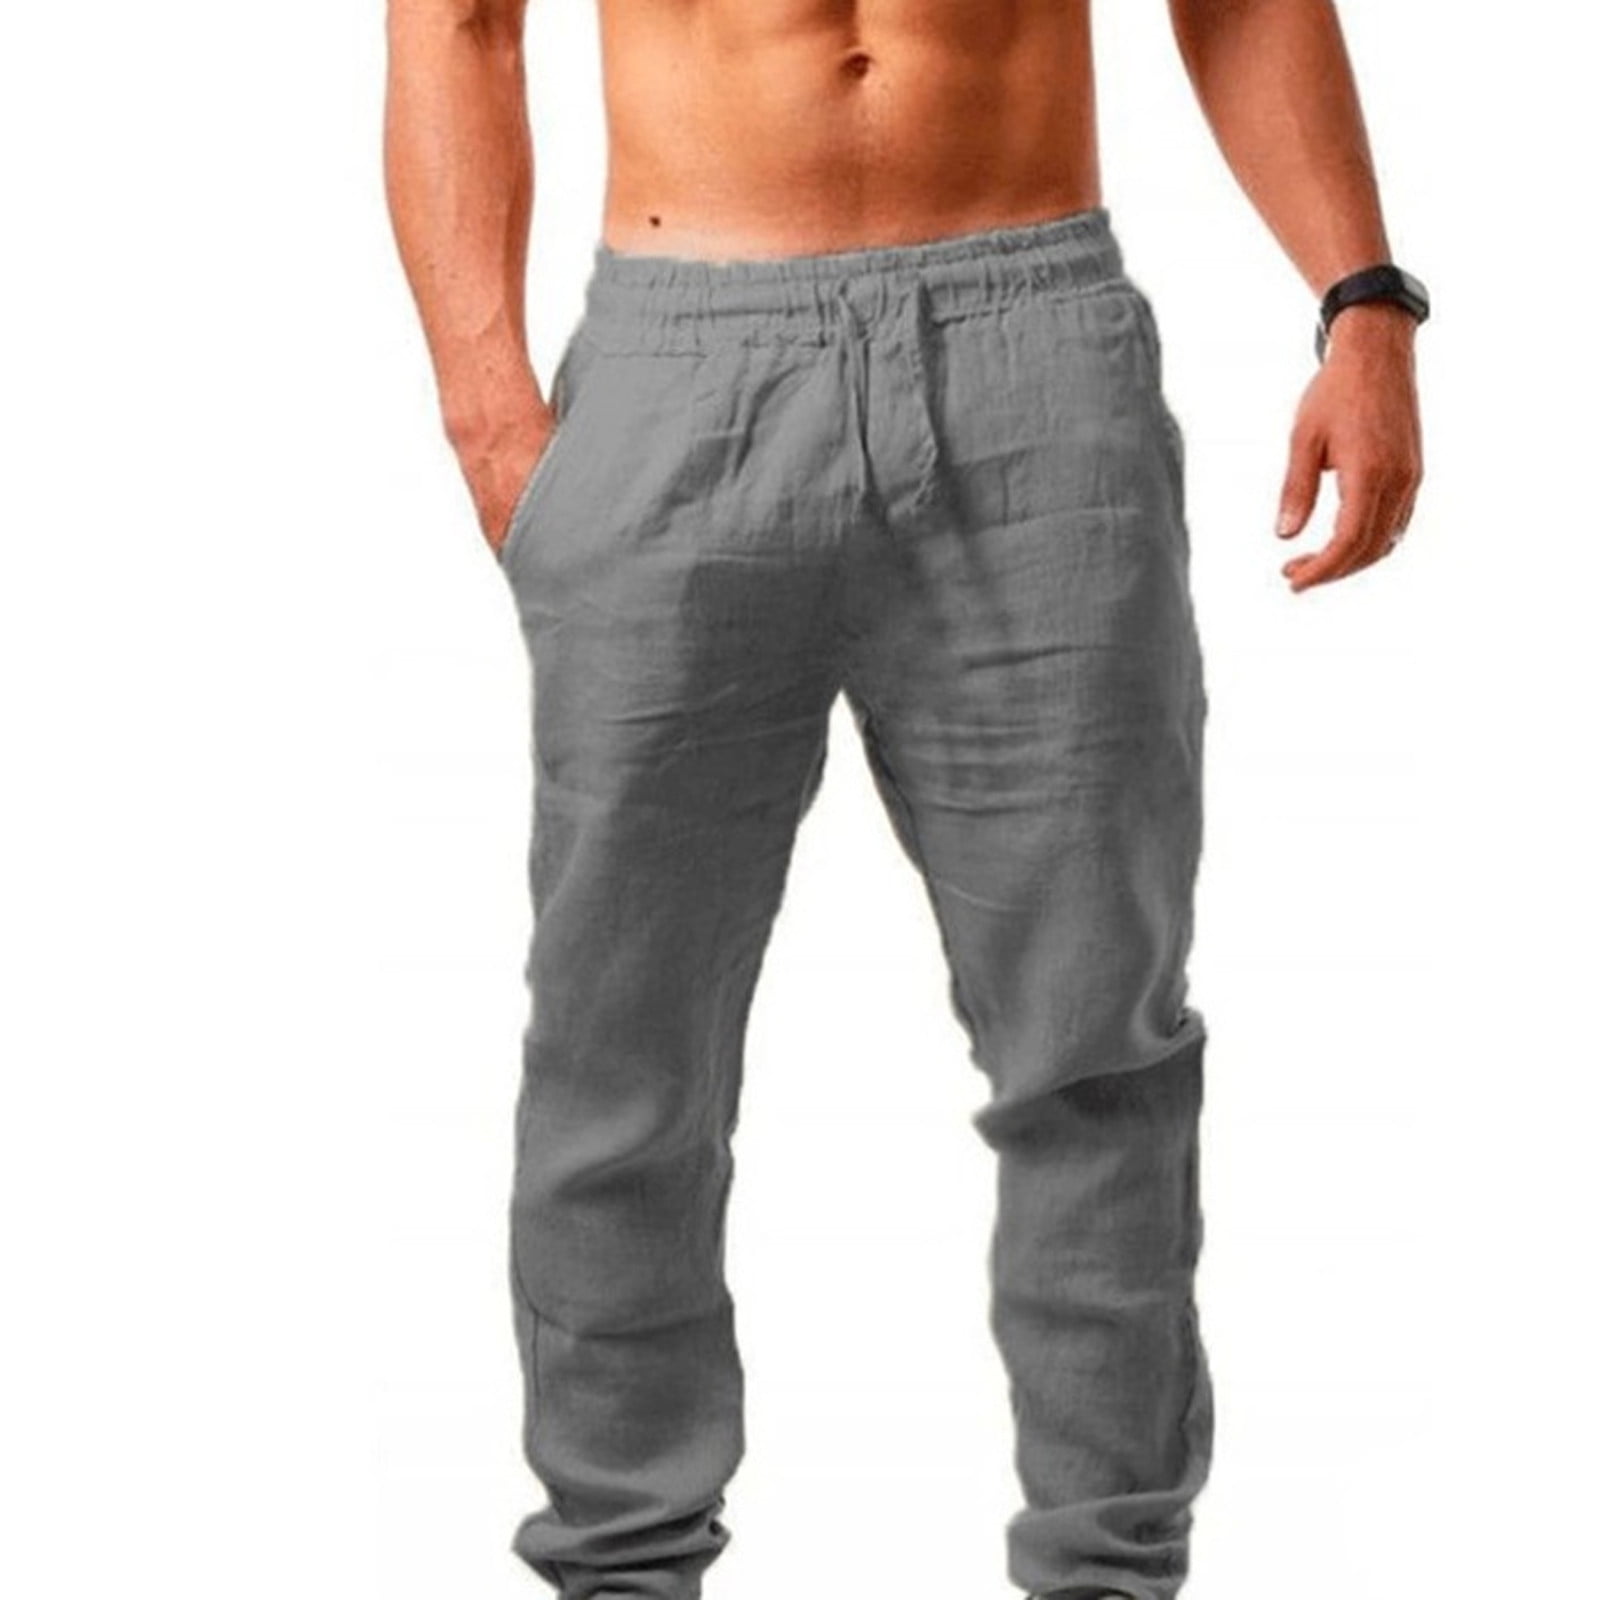 Long Pants For Men Men S Elastic Pants Solid Color Breathable Cotton Linen Loose Casual Pants Gray Xl ac5989 bfdee74e 1c36 4ec6 a329 2e916a83cd56.37a6afc49dca3c07aea82456997cf24e